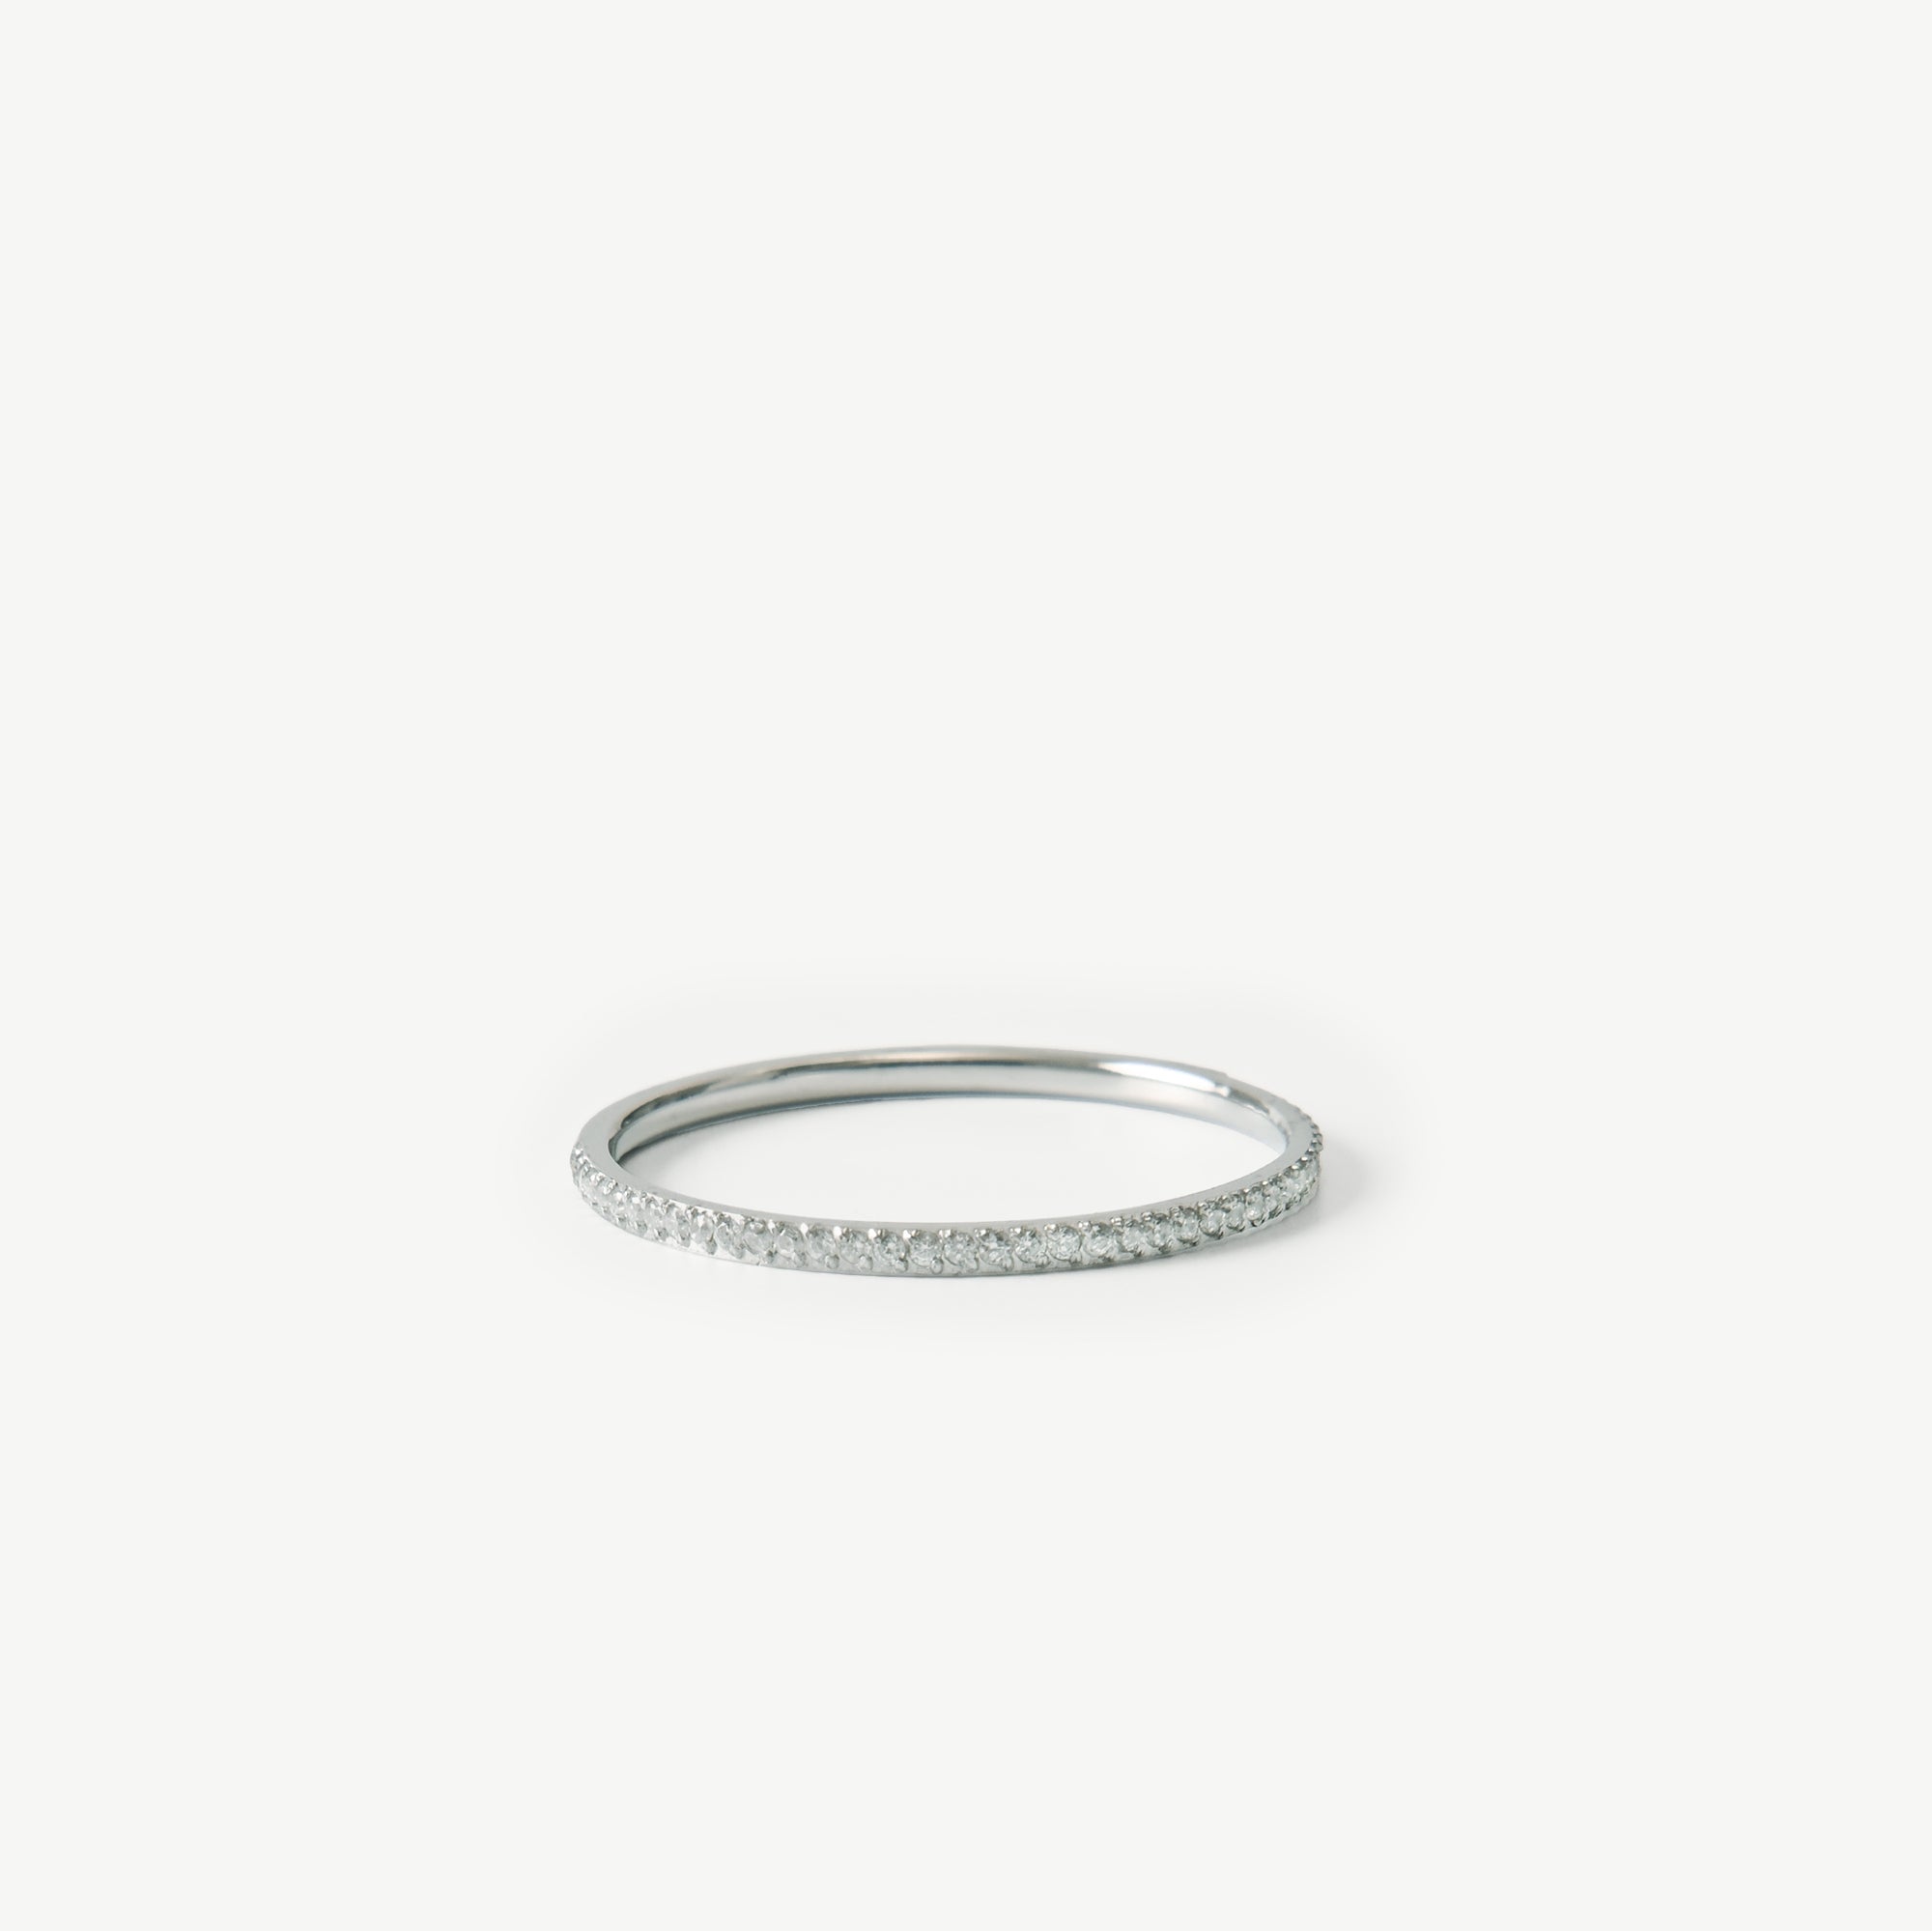 Silver Calliope Ring - EzaVision - Ring - Silver Calliope Ring - EzaVision